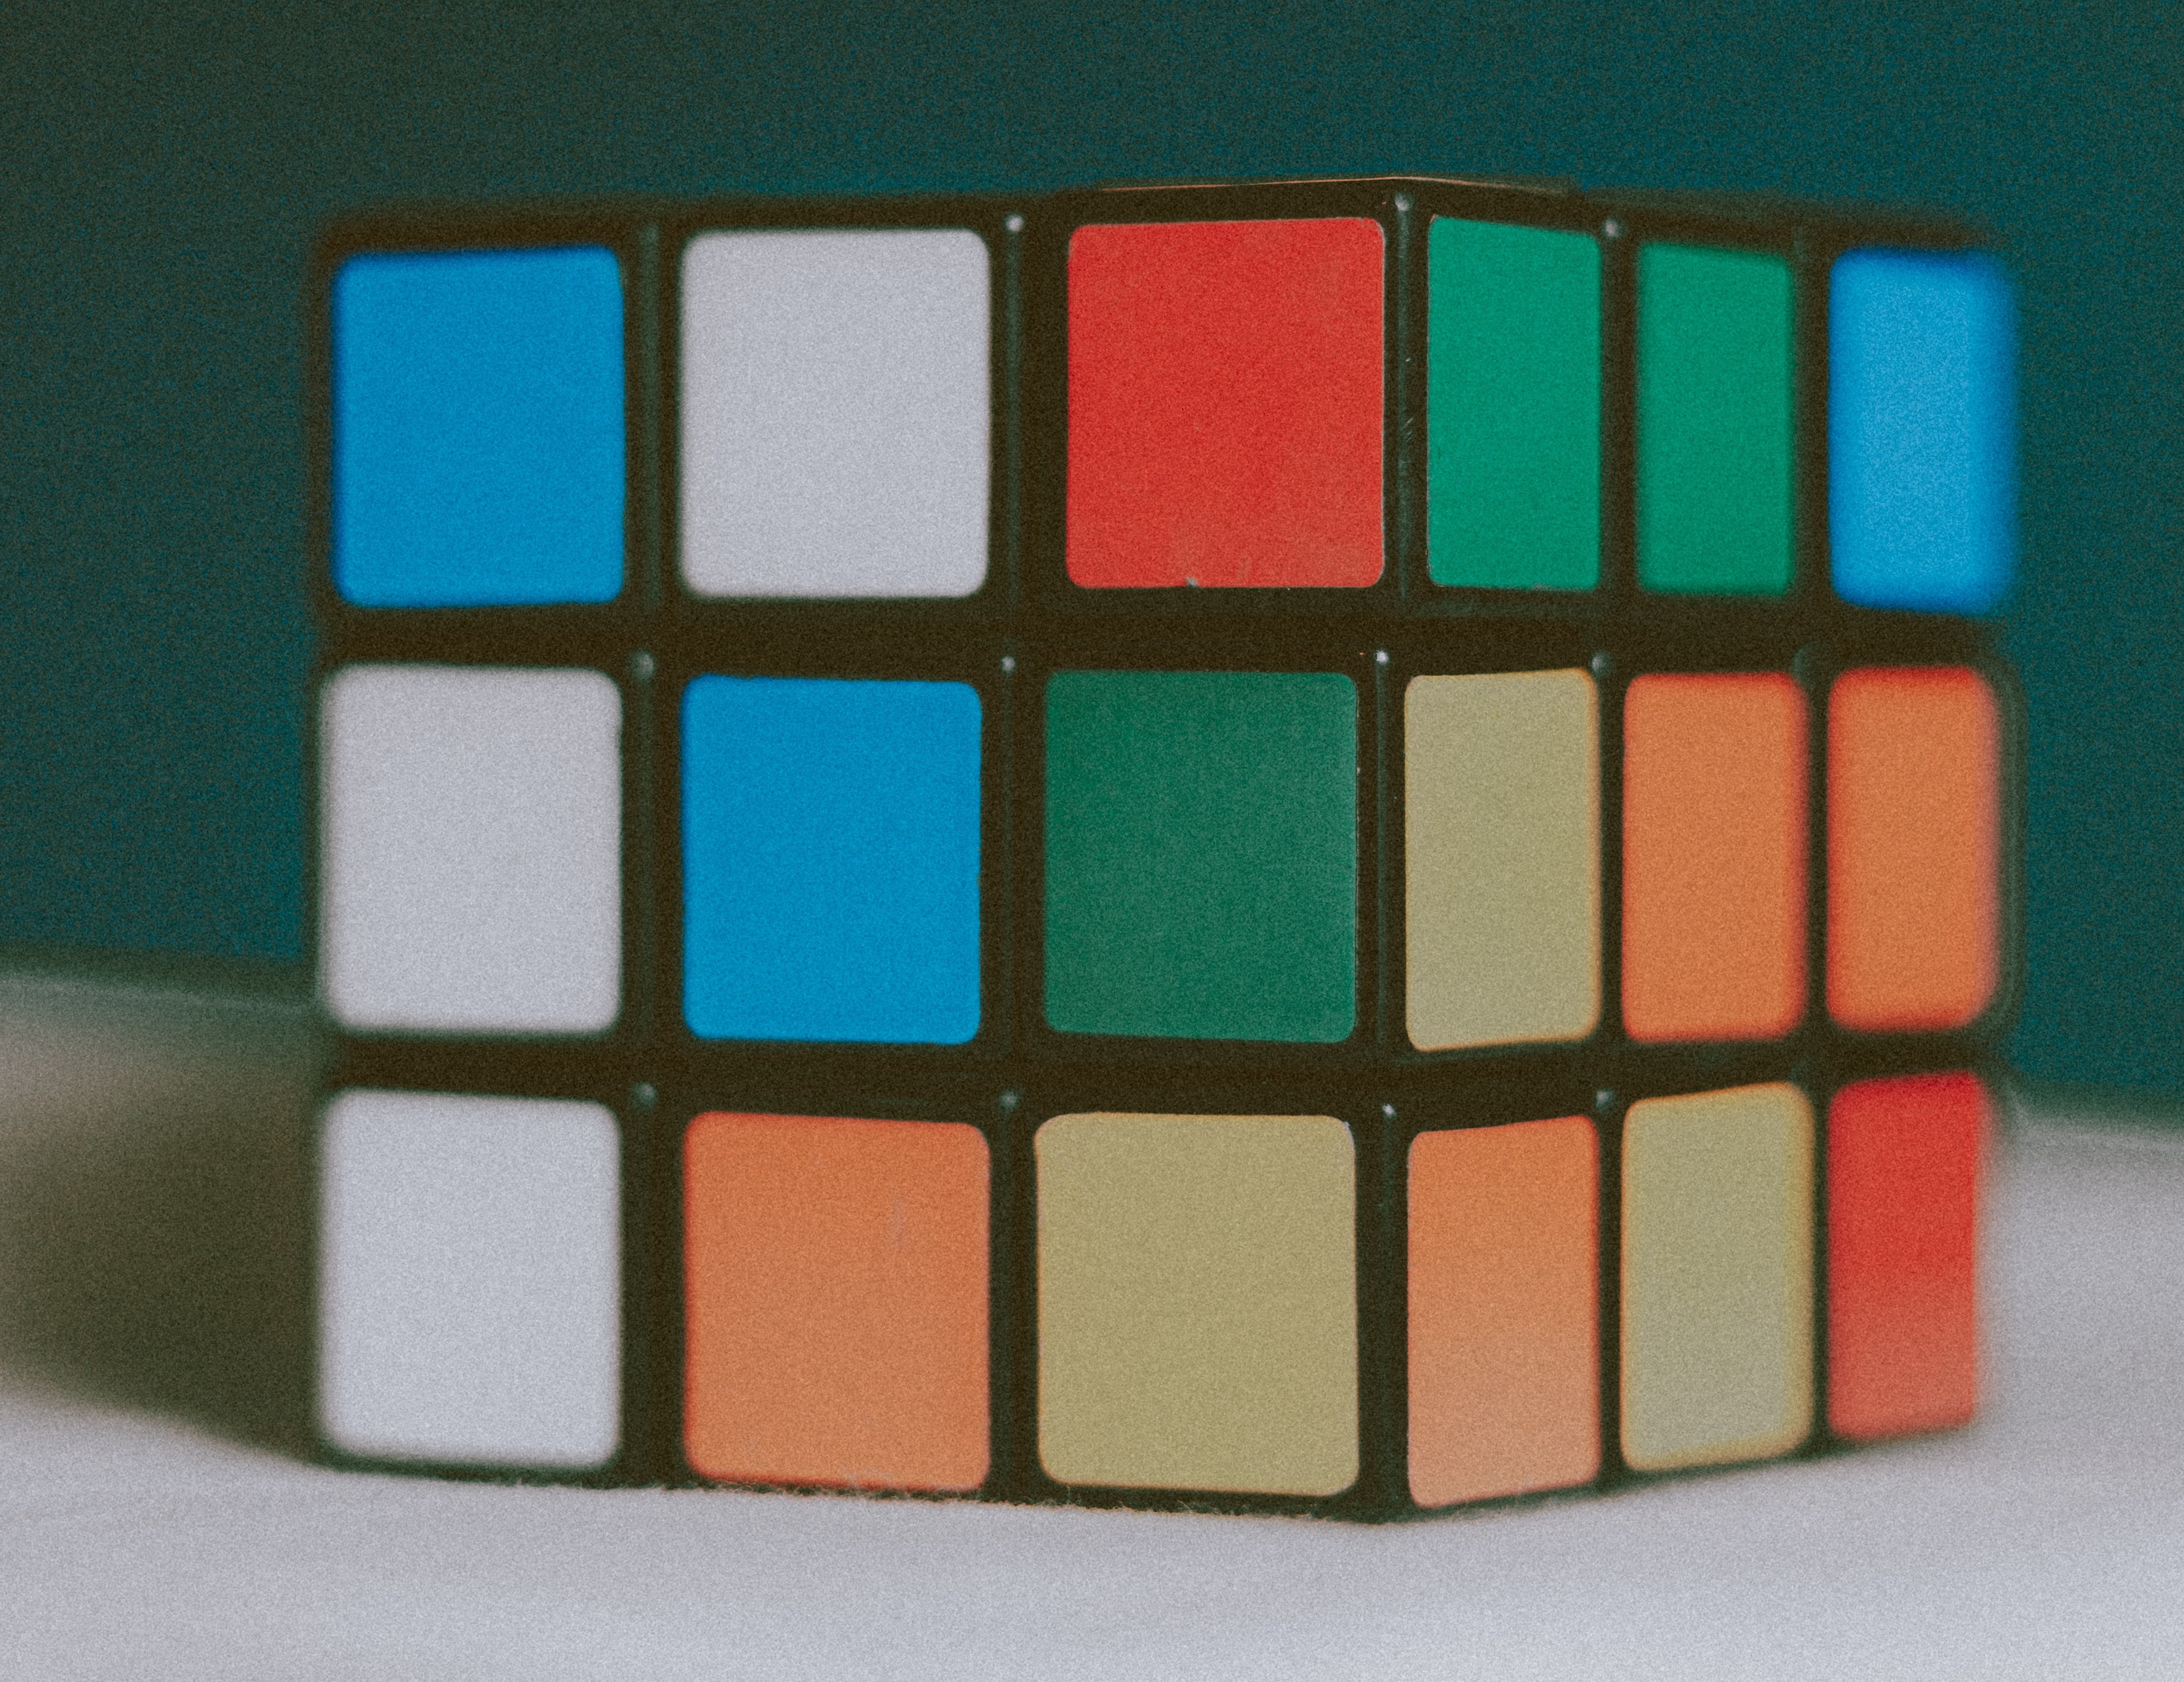 A Rubik's cube